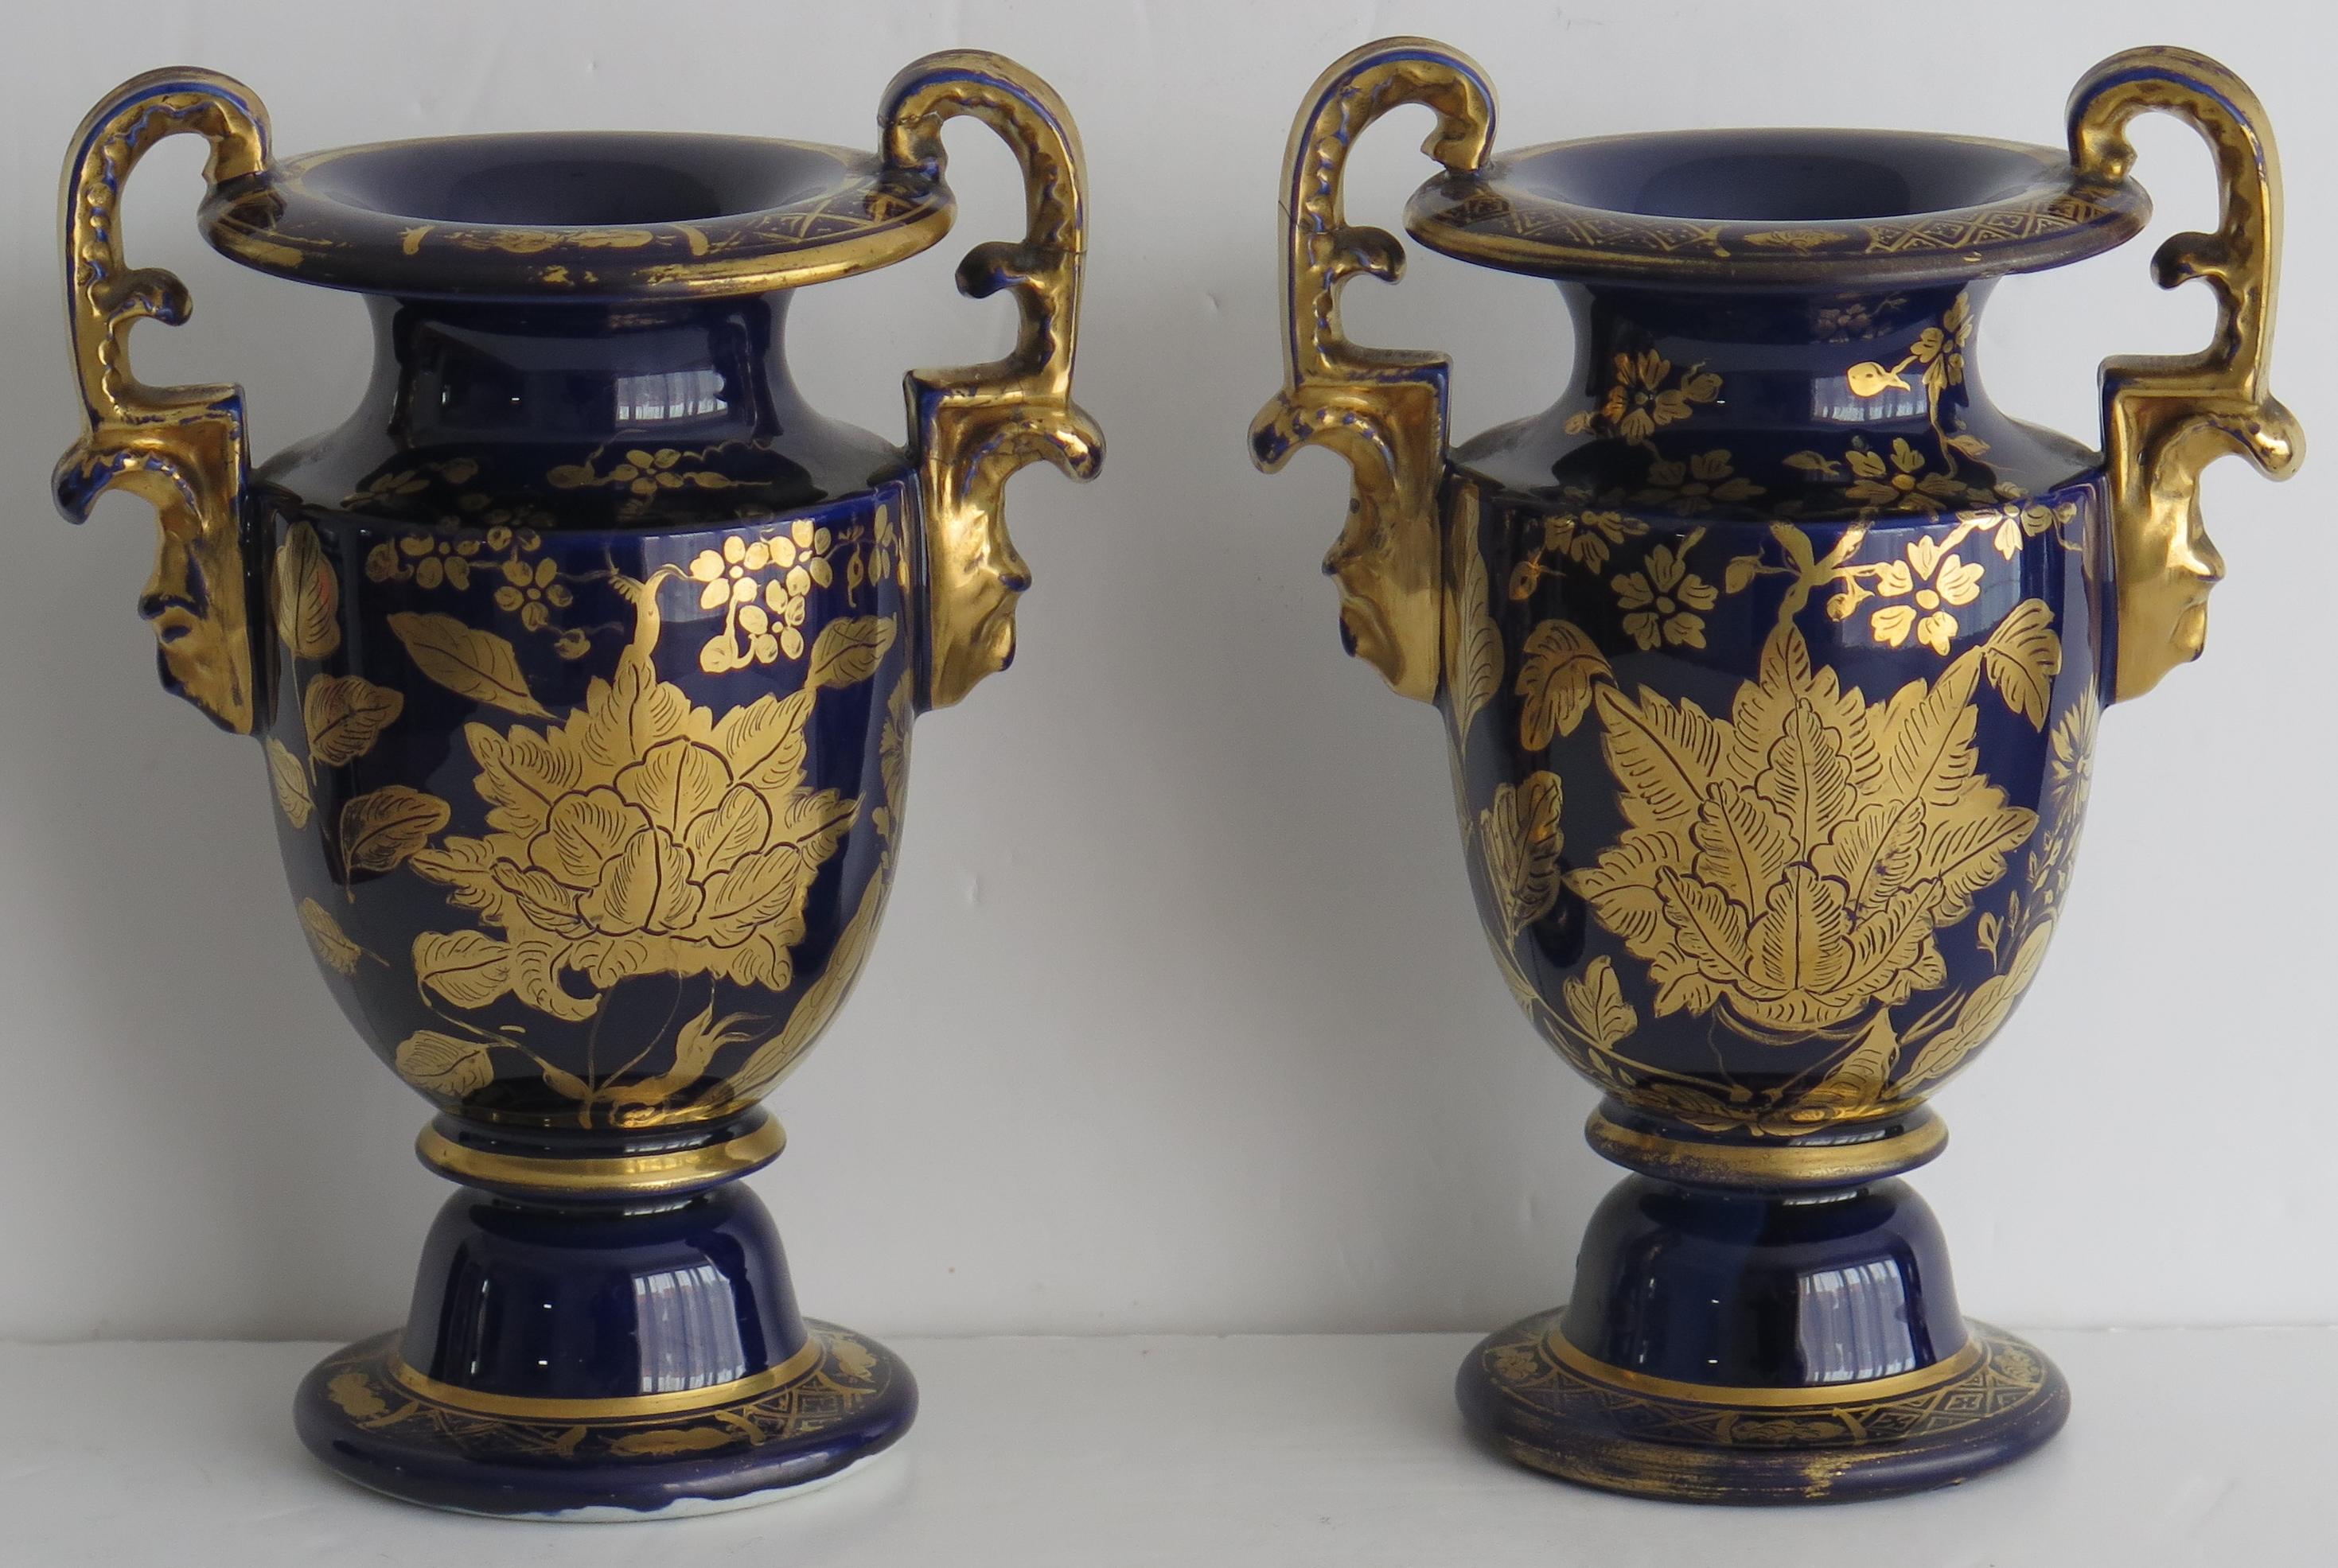 Es handelt sich um ein seltenes Paar Eisensteinvasen mit hohen Henkeln, hergestellt von der Mason's Factory, England, im frühen 19. Jahrhundert, etwa 1815 bis 1820.

Diese Fußvasen sind in einer seltenen Form mit zwei kunstvoll geformten